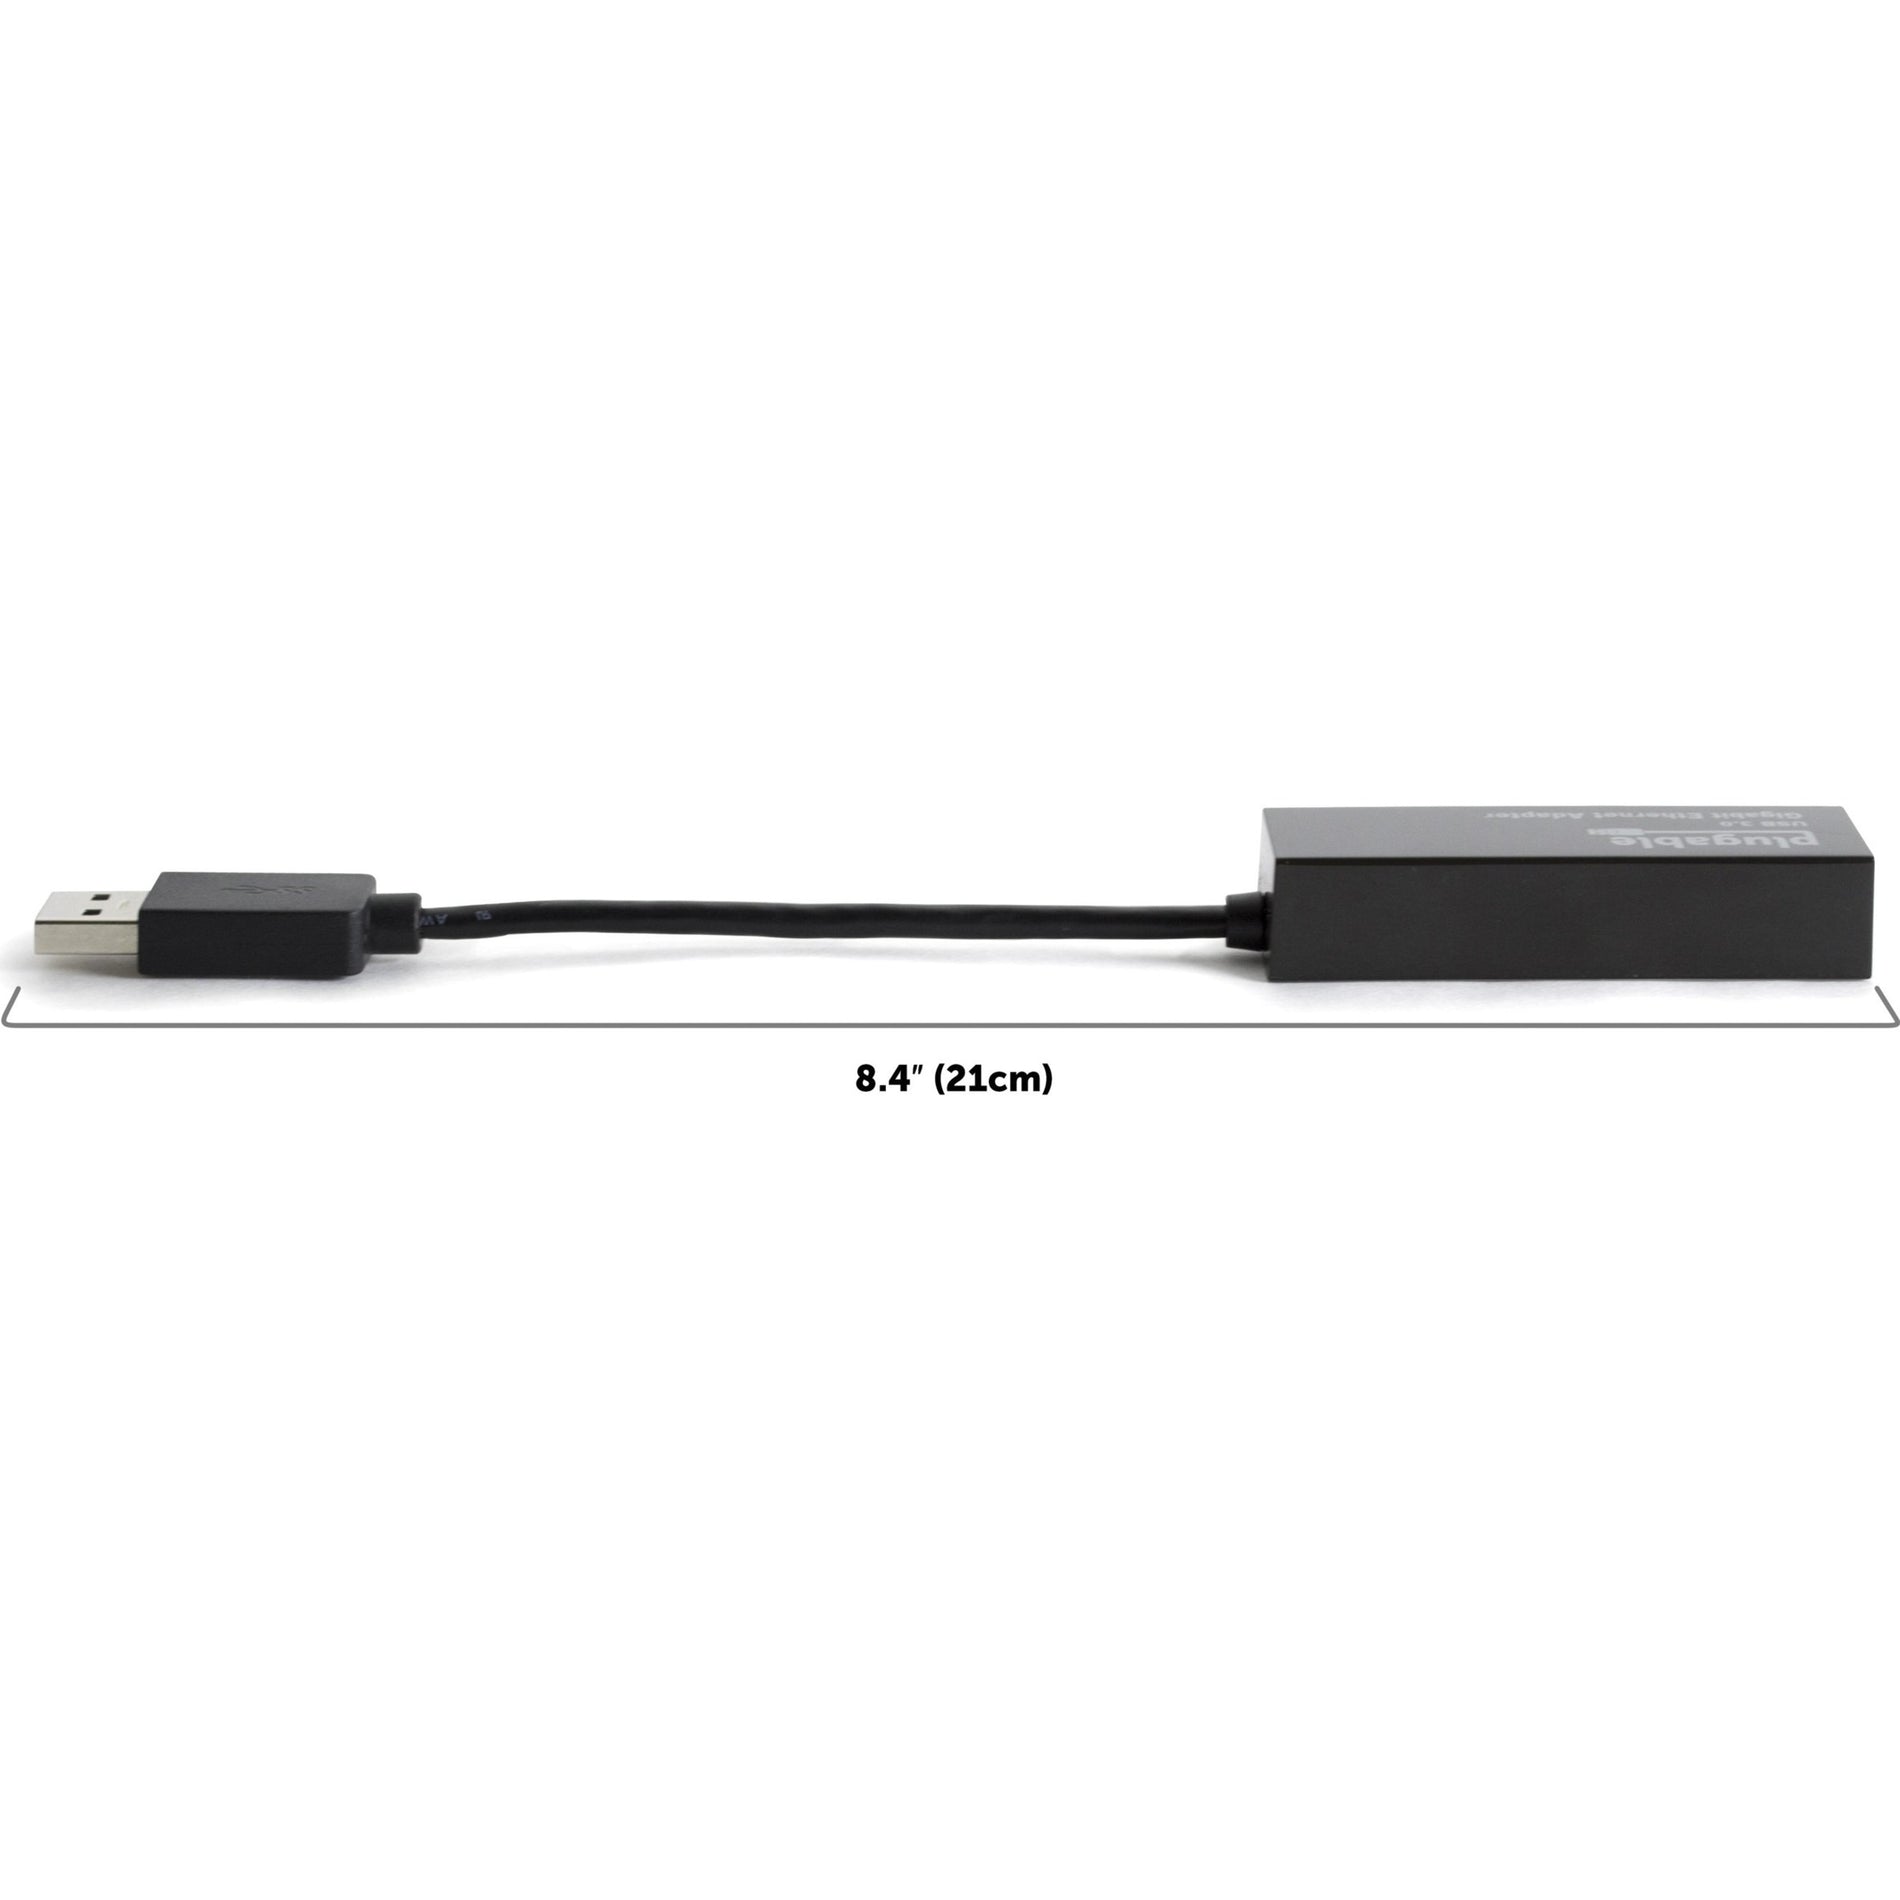 محول USB3-E1000 USB إلى إيثرنت، USB 3.0 إلى إيثرنت جيجابت، نقل بيانات عالية السرعة العلامة التجارية: Plugable